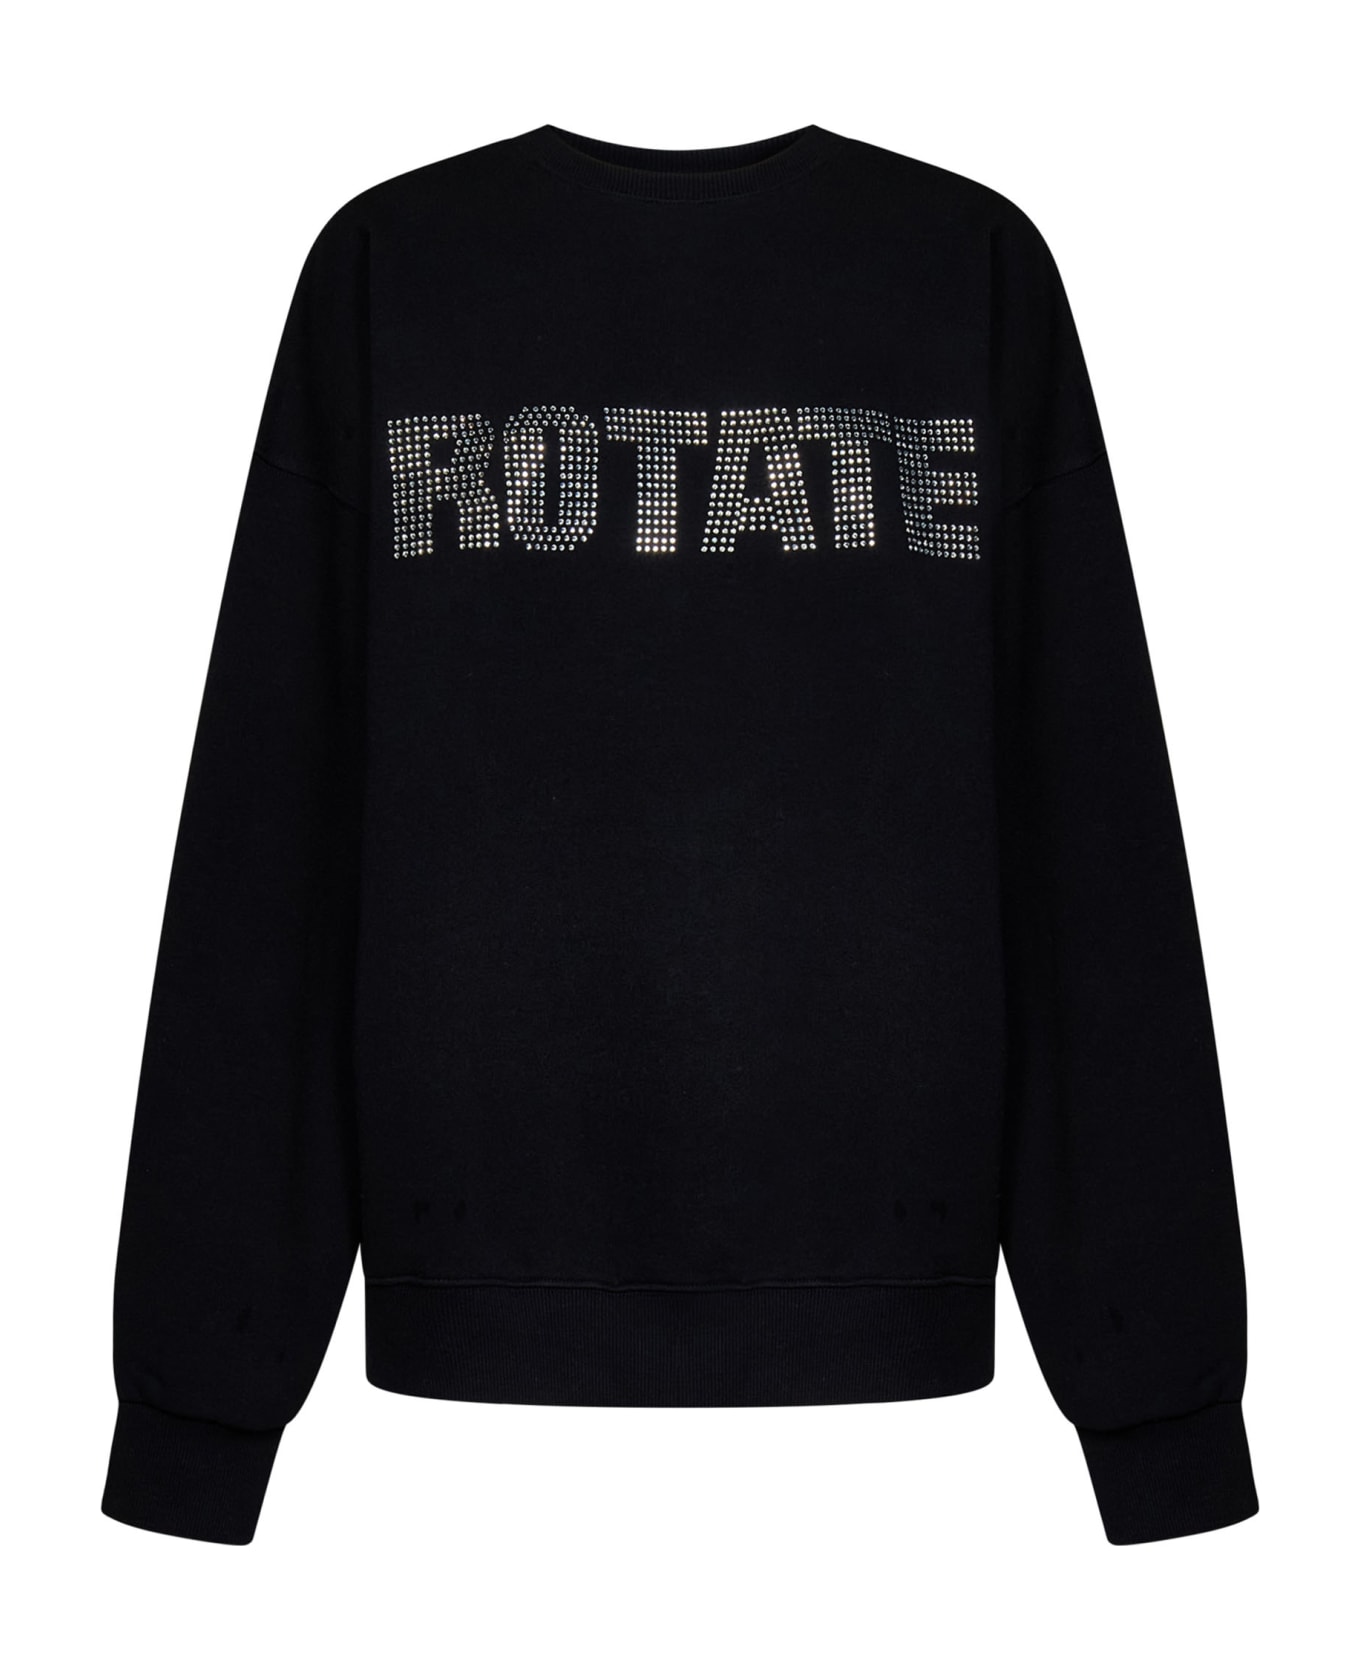 Rotate by Birger Christensen Rotate Sweatshirt - Nero フリース